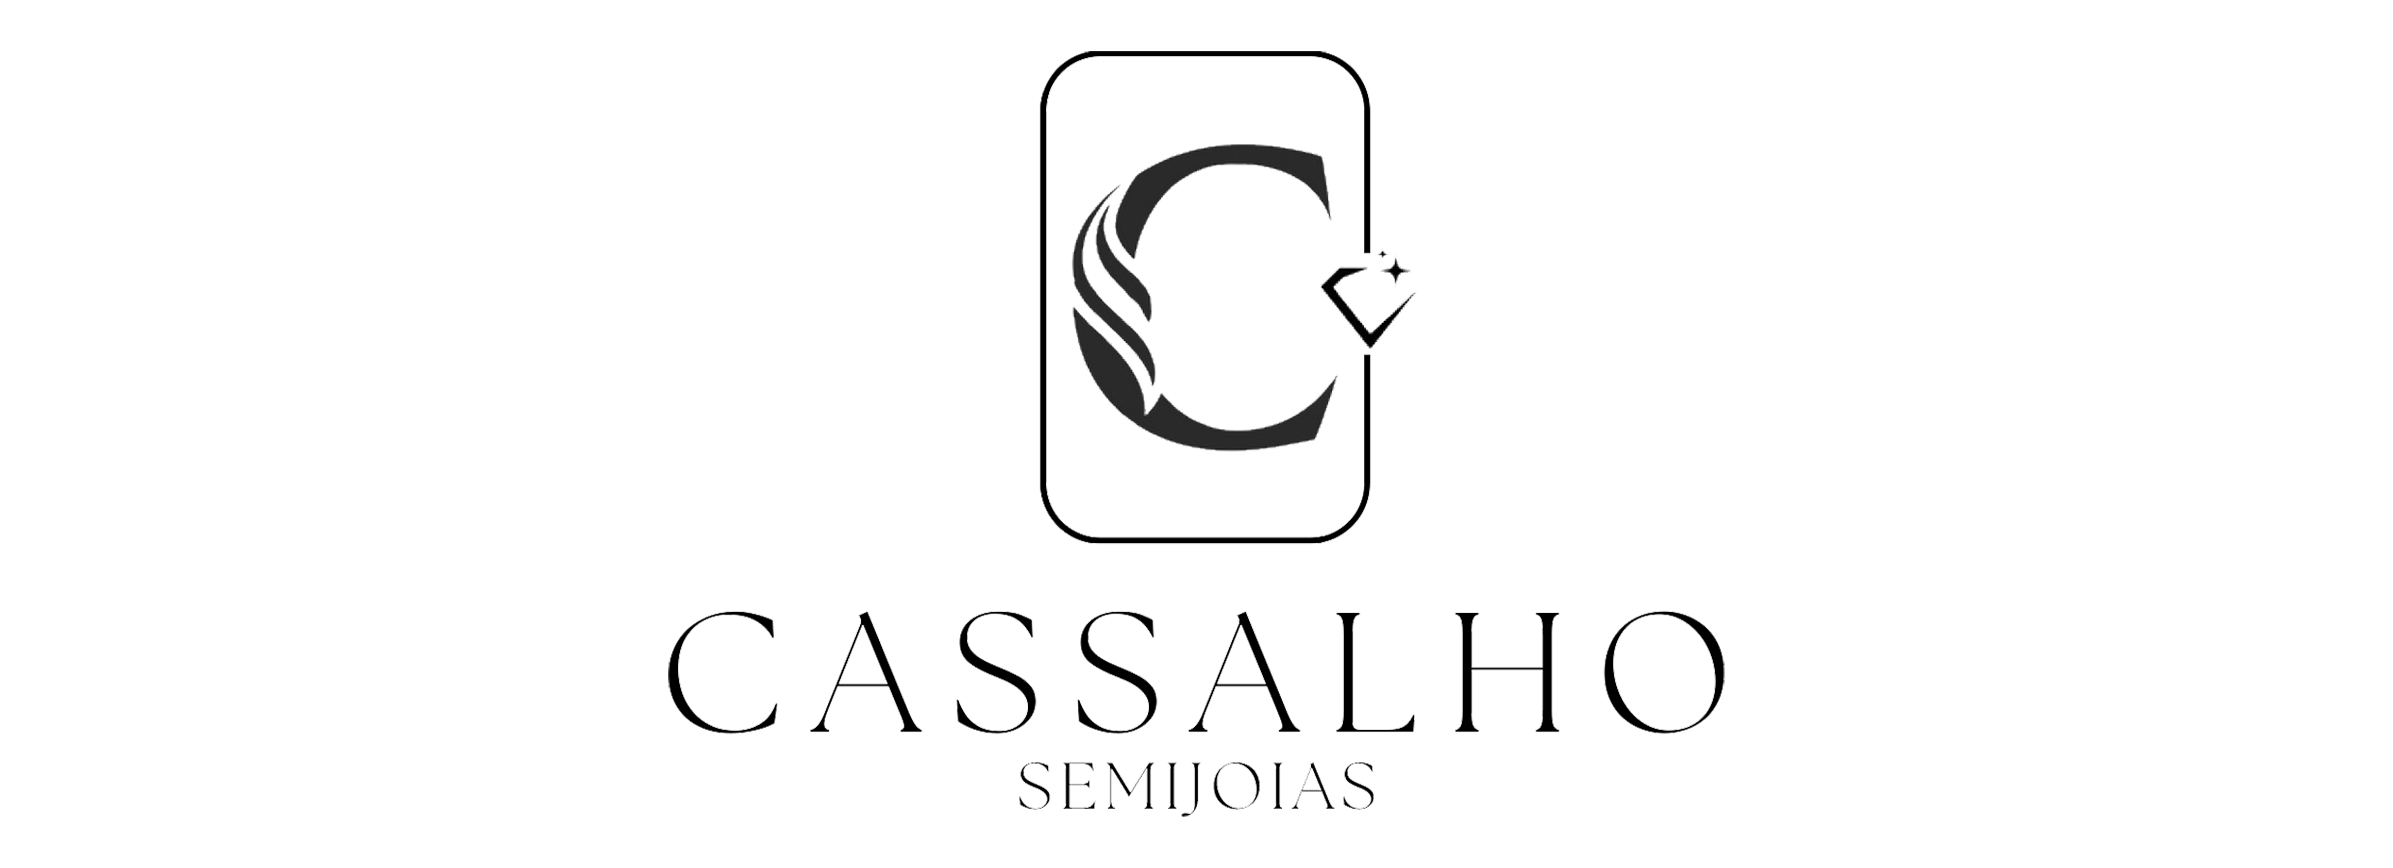 Cassalho logo